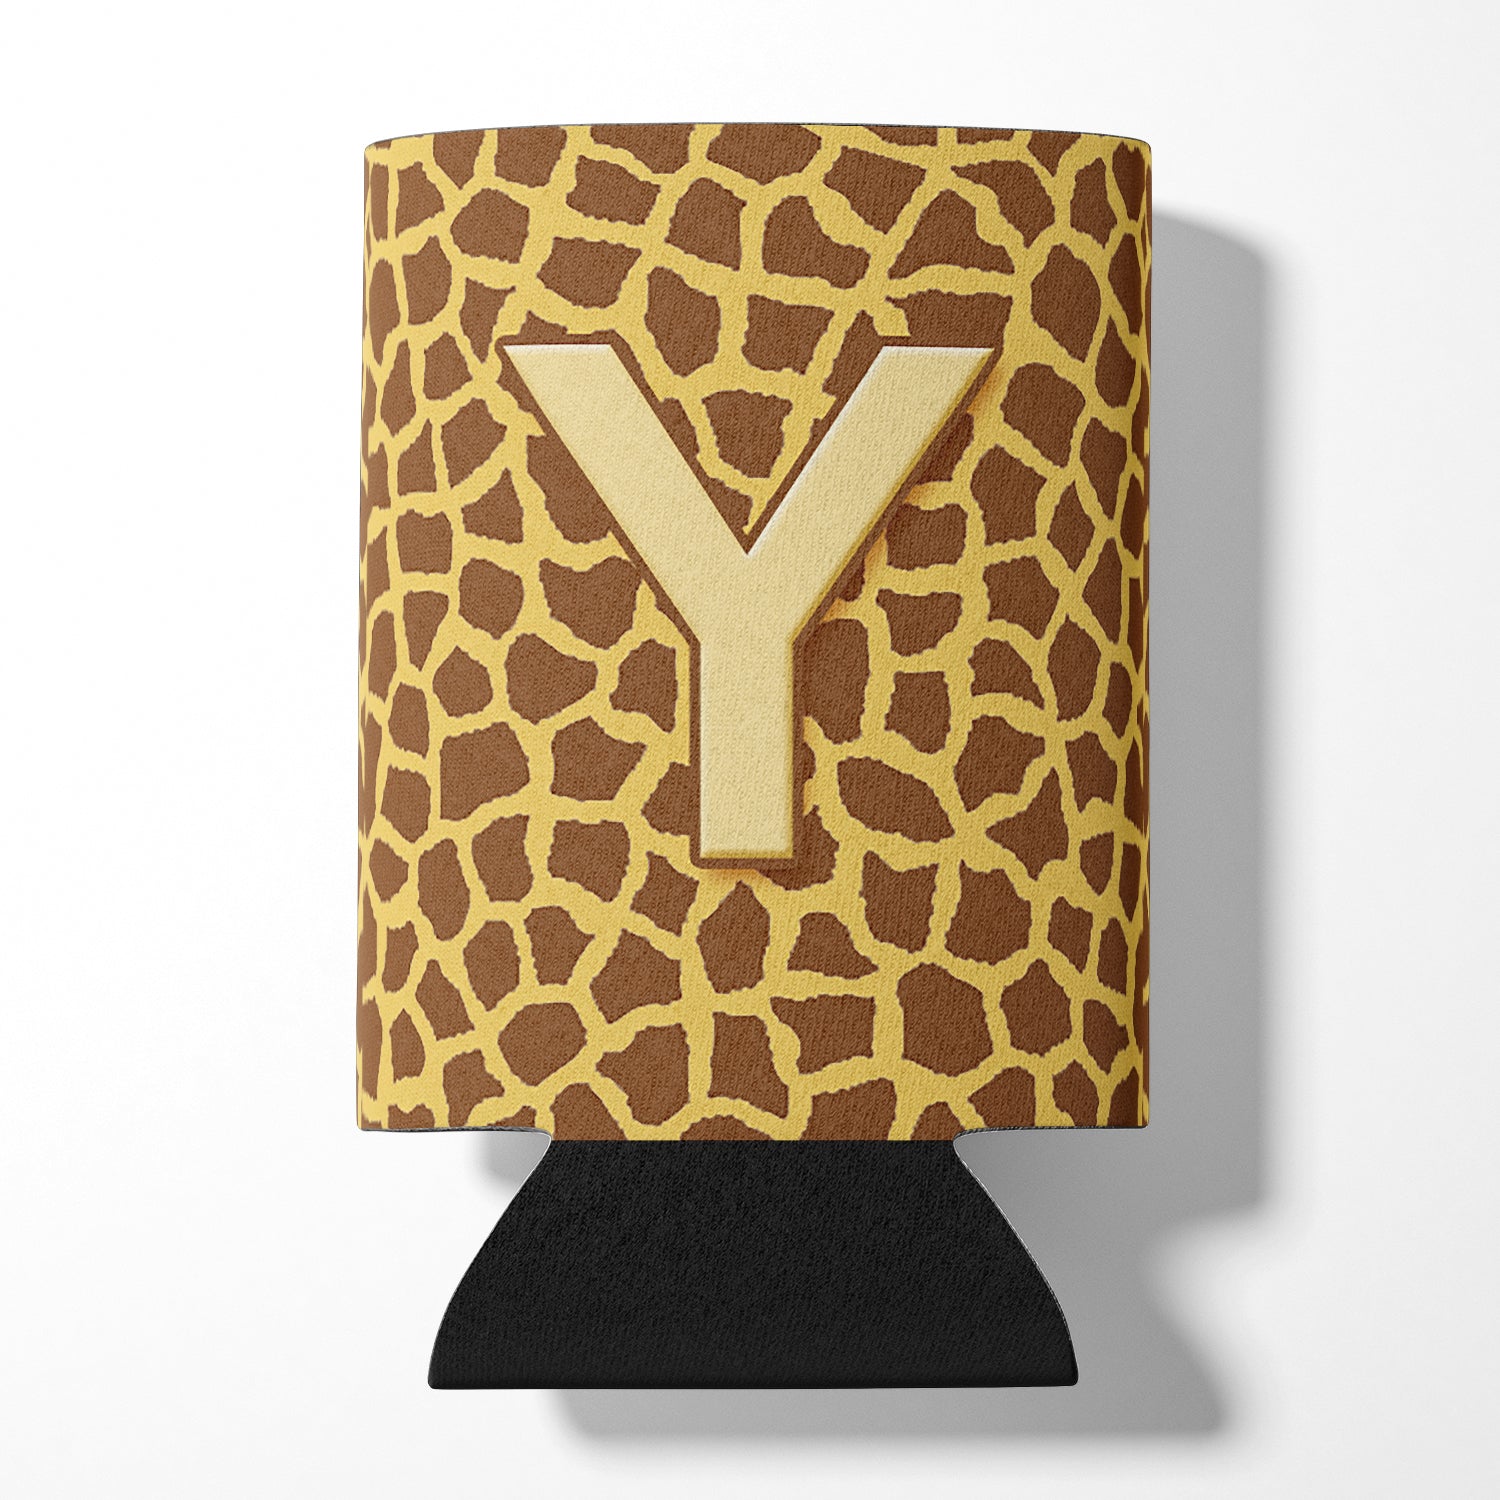 Letter Y Initial Monogram - Giraffe Can or Bottle Beverage Insulator Hugger.